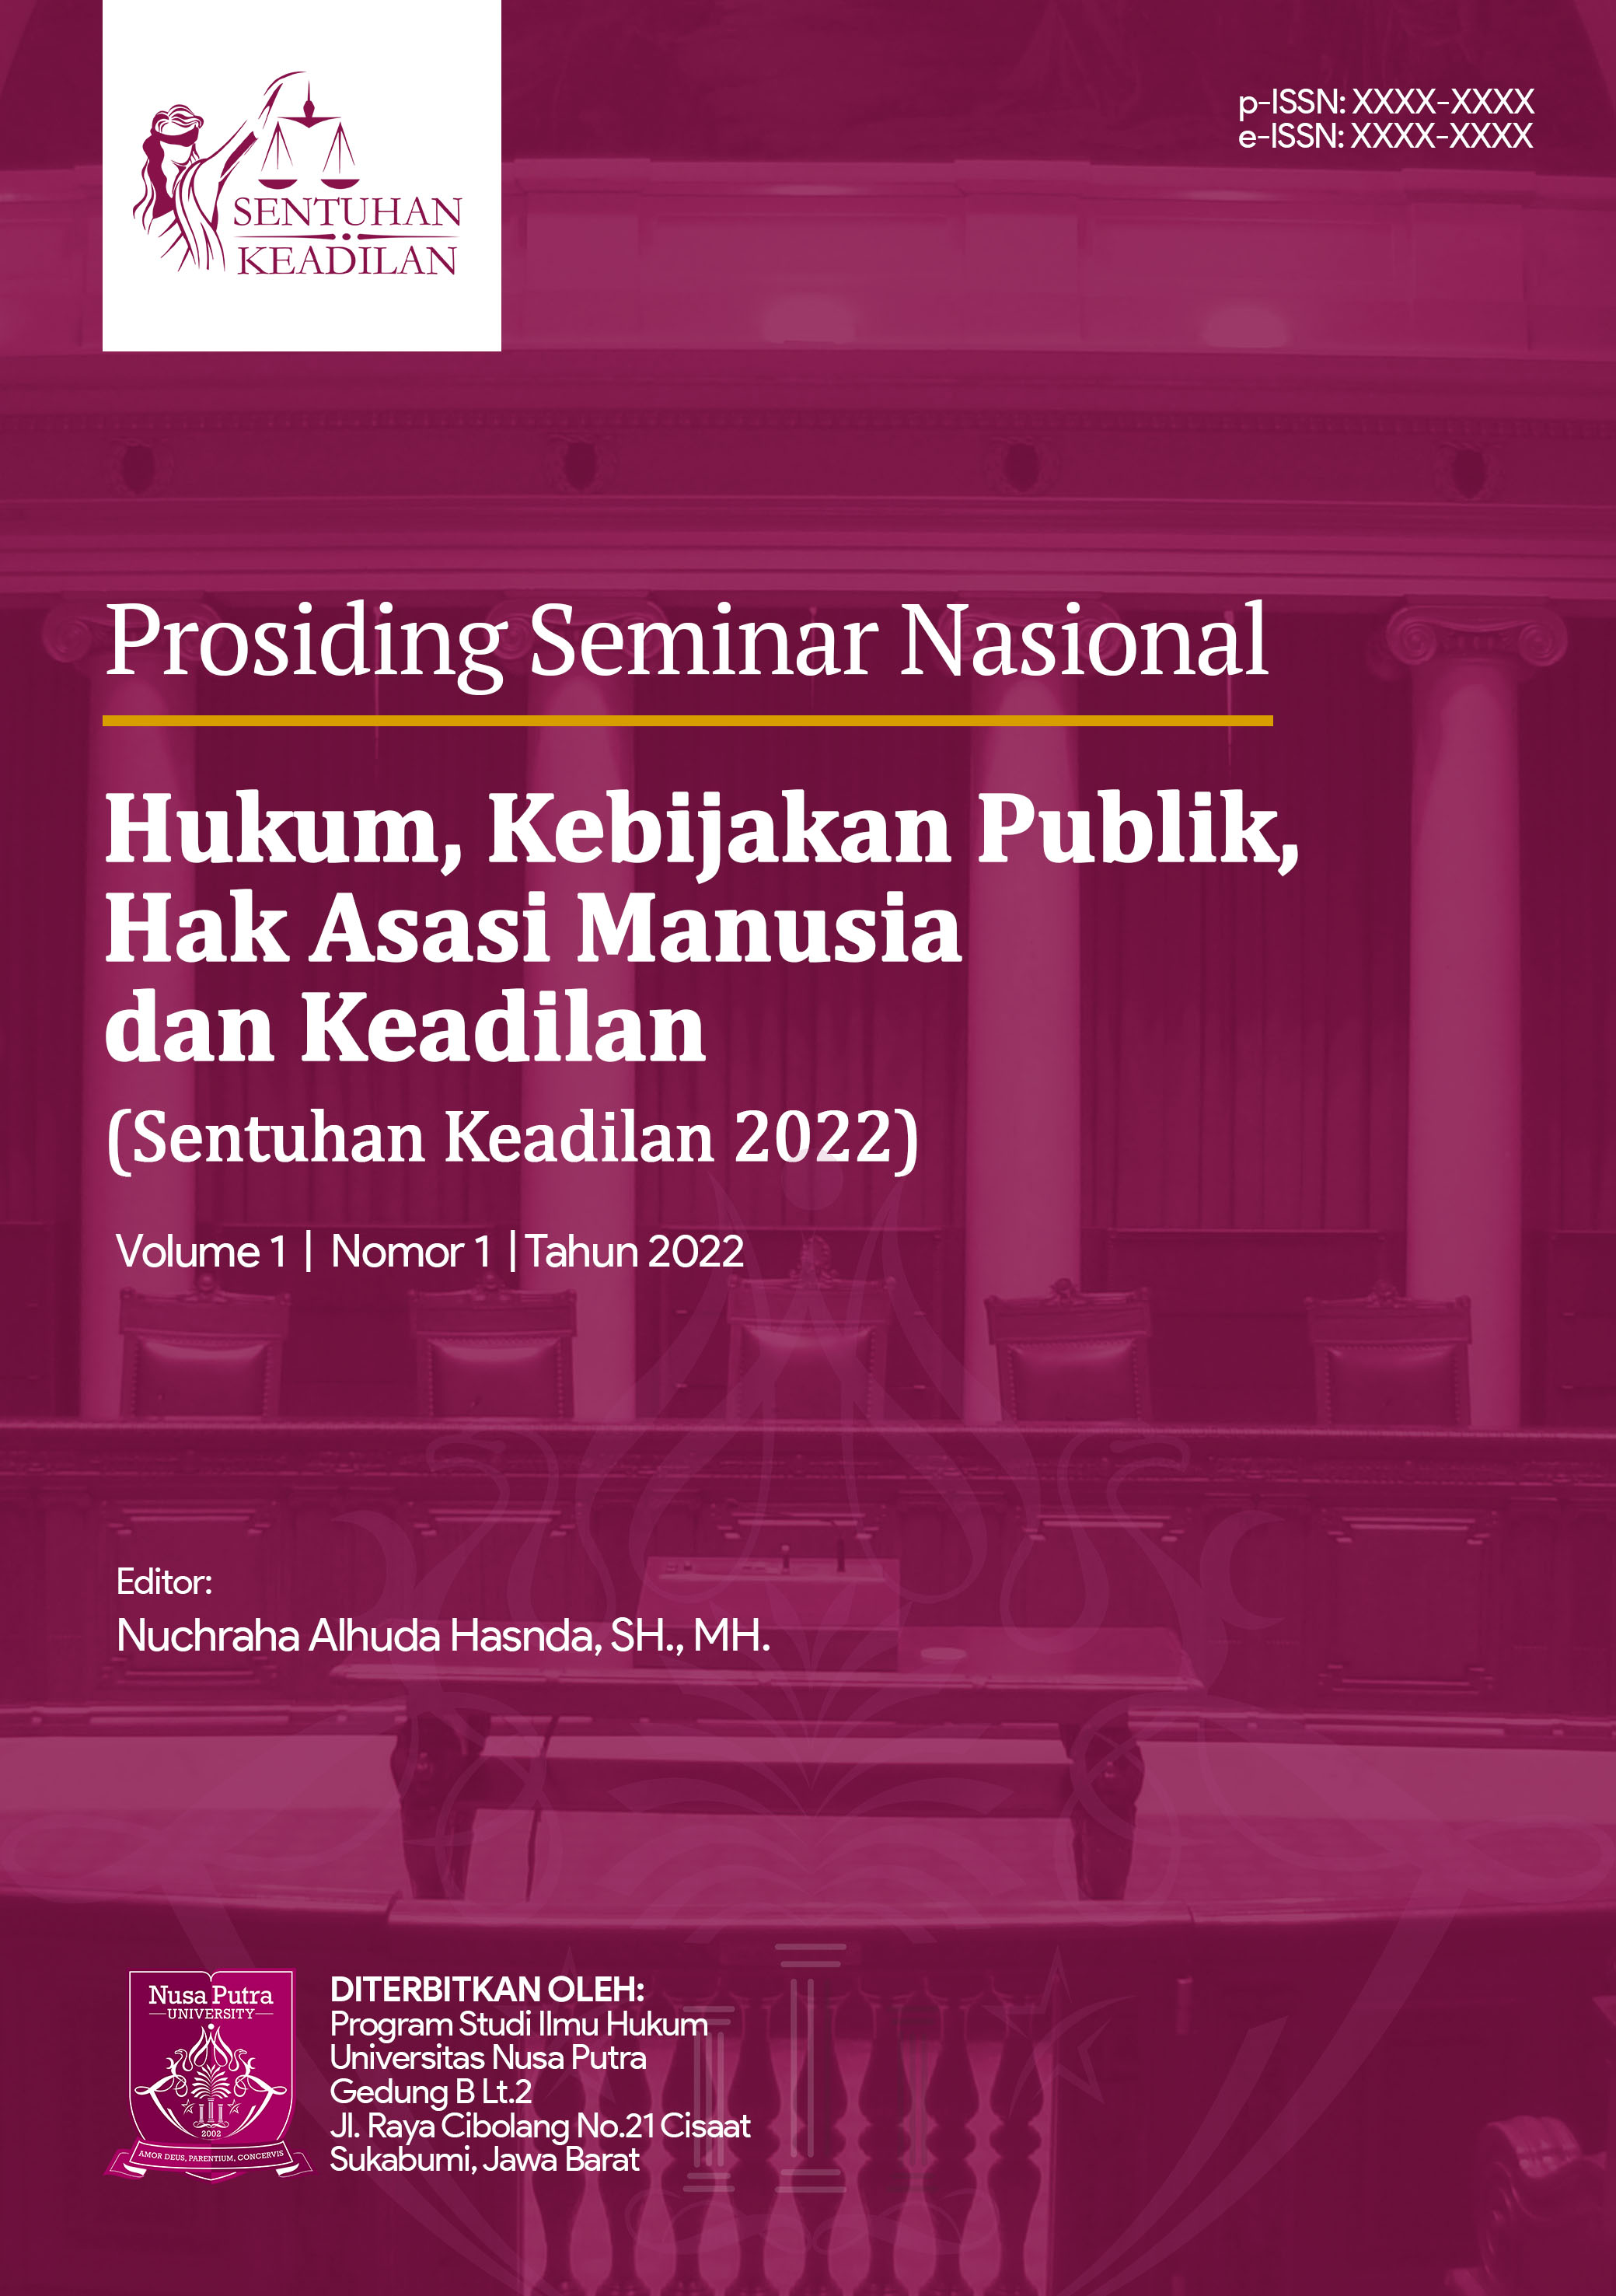 					View Vol. 1 (2022): Prosiding Seminar Nasional Hukum, Kebijakan Publik, Hak Asasi Manusia dan Keadilan (SENTUHAN KEADILAN 2022)
				